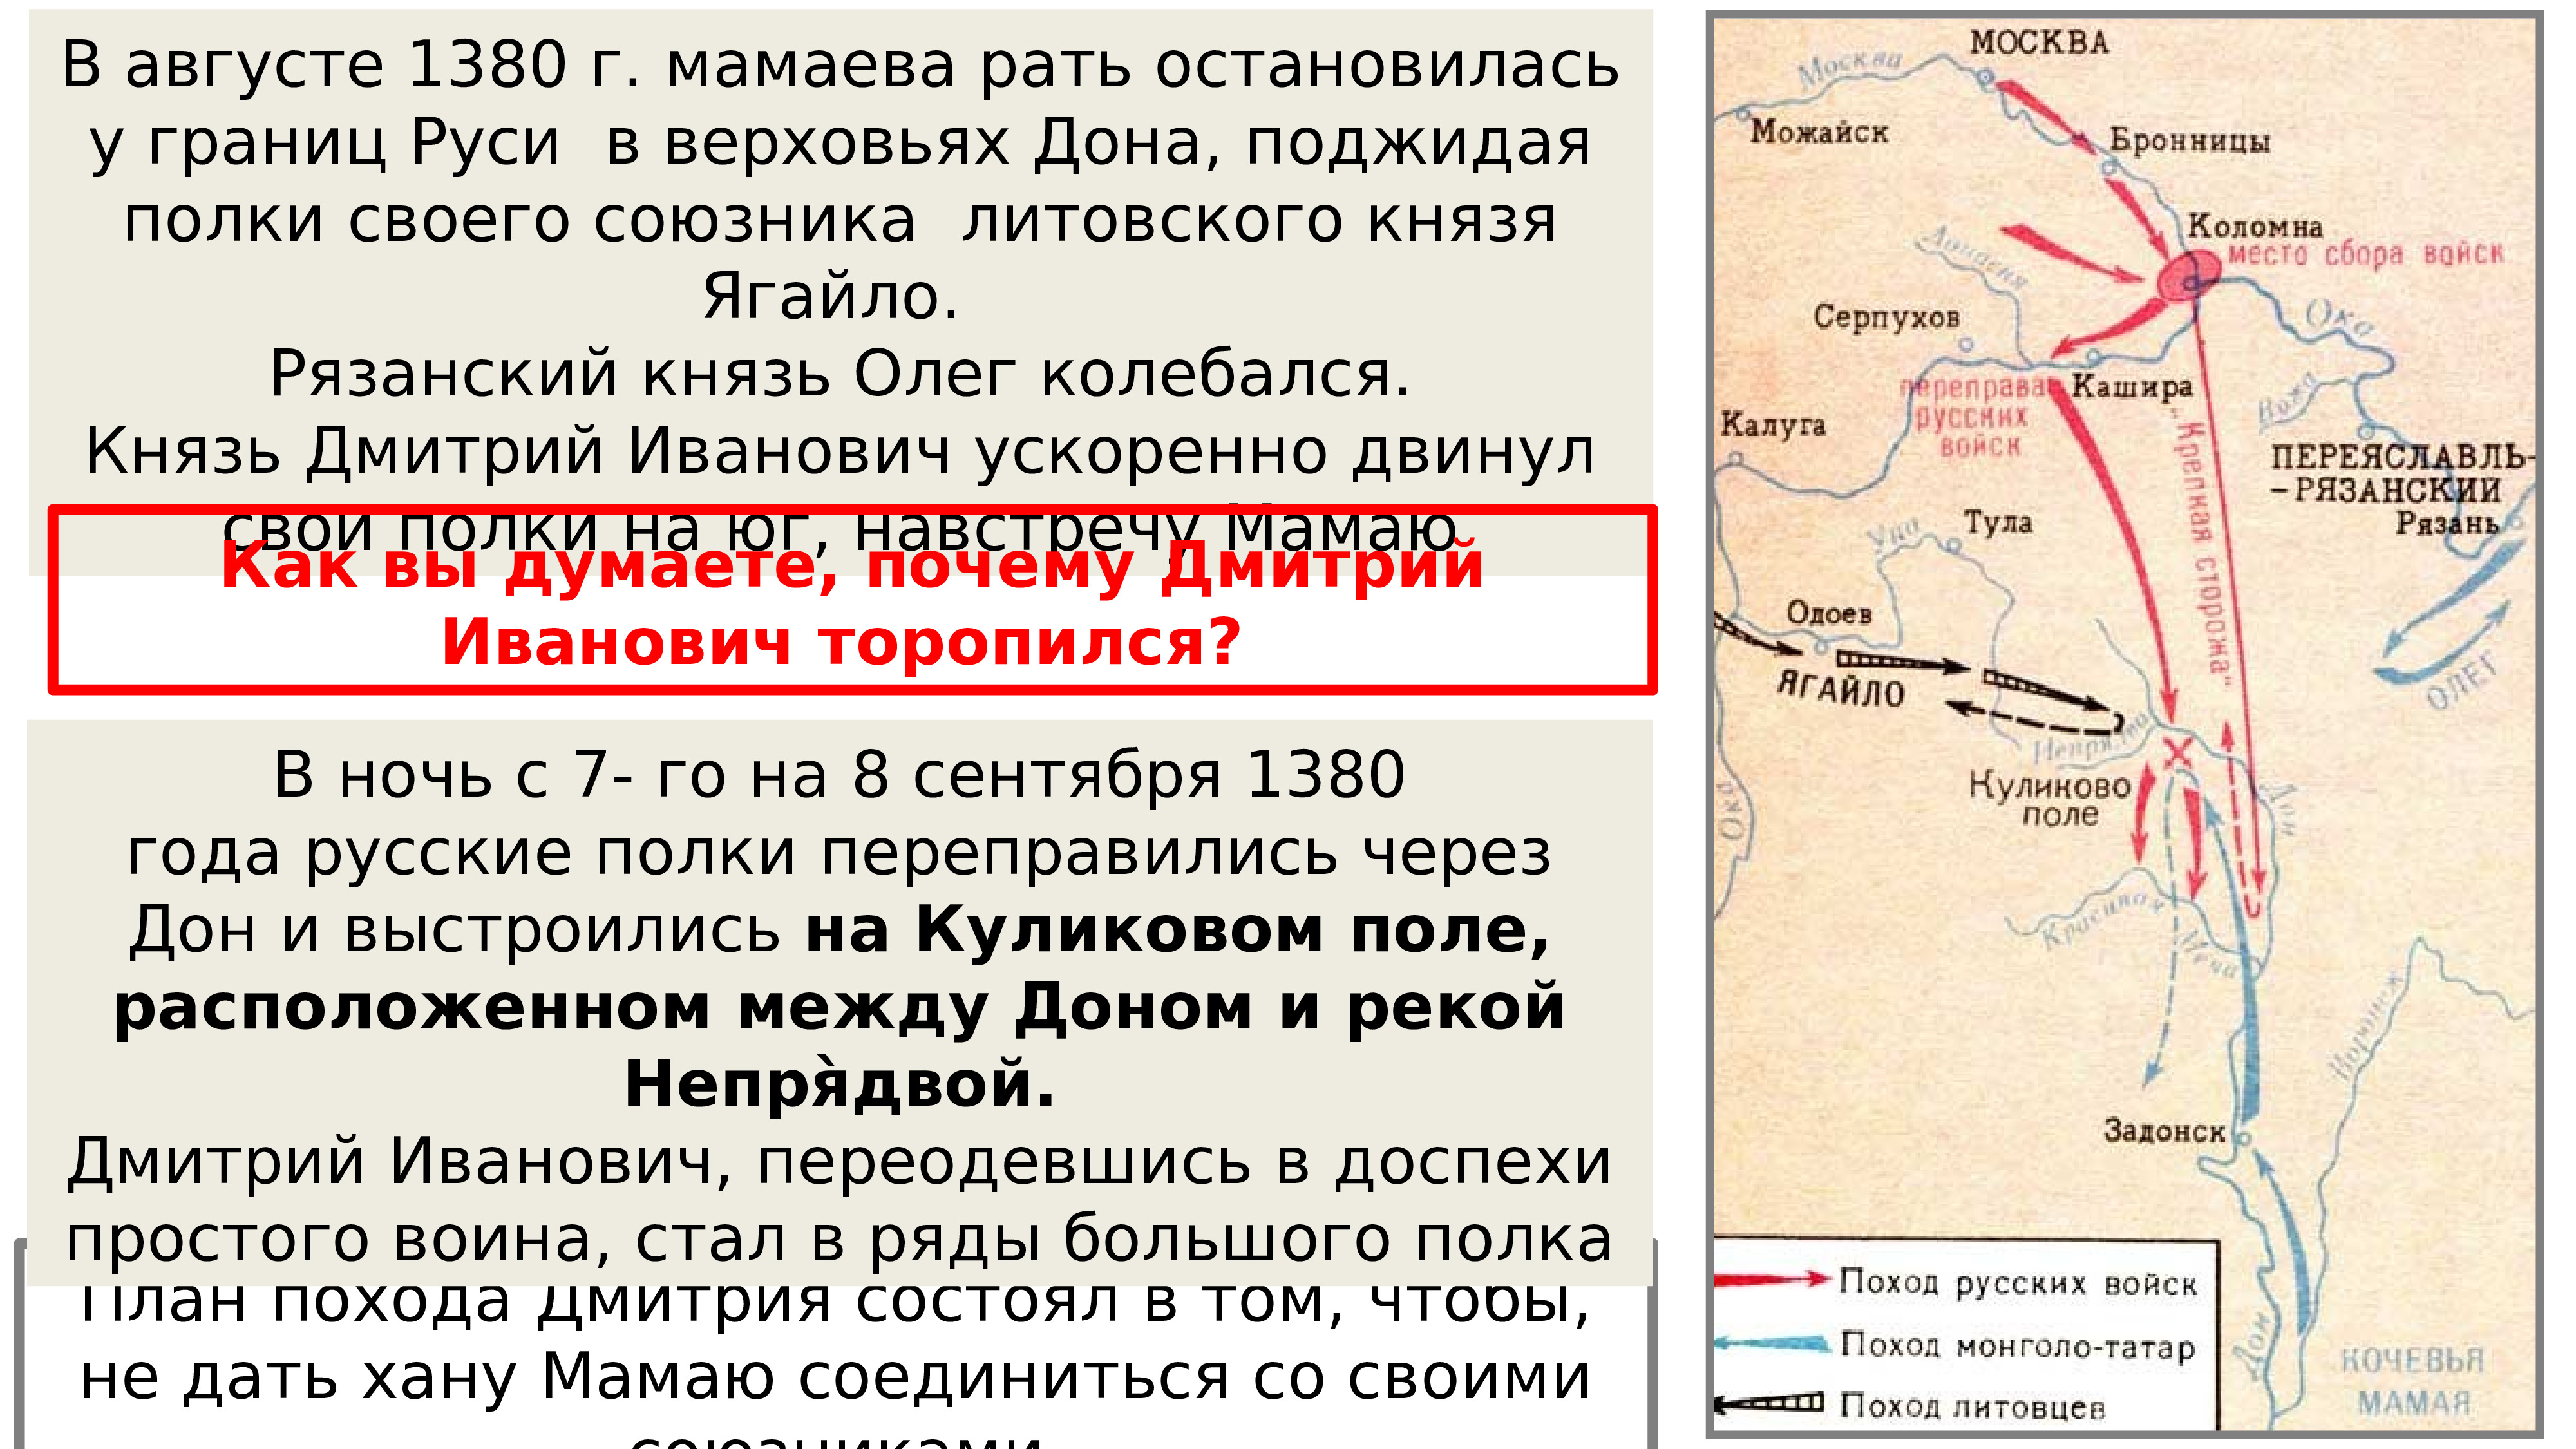 Как москва стала центром объединения русских земель